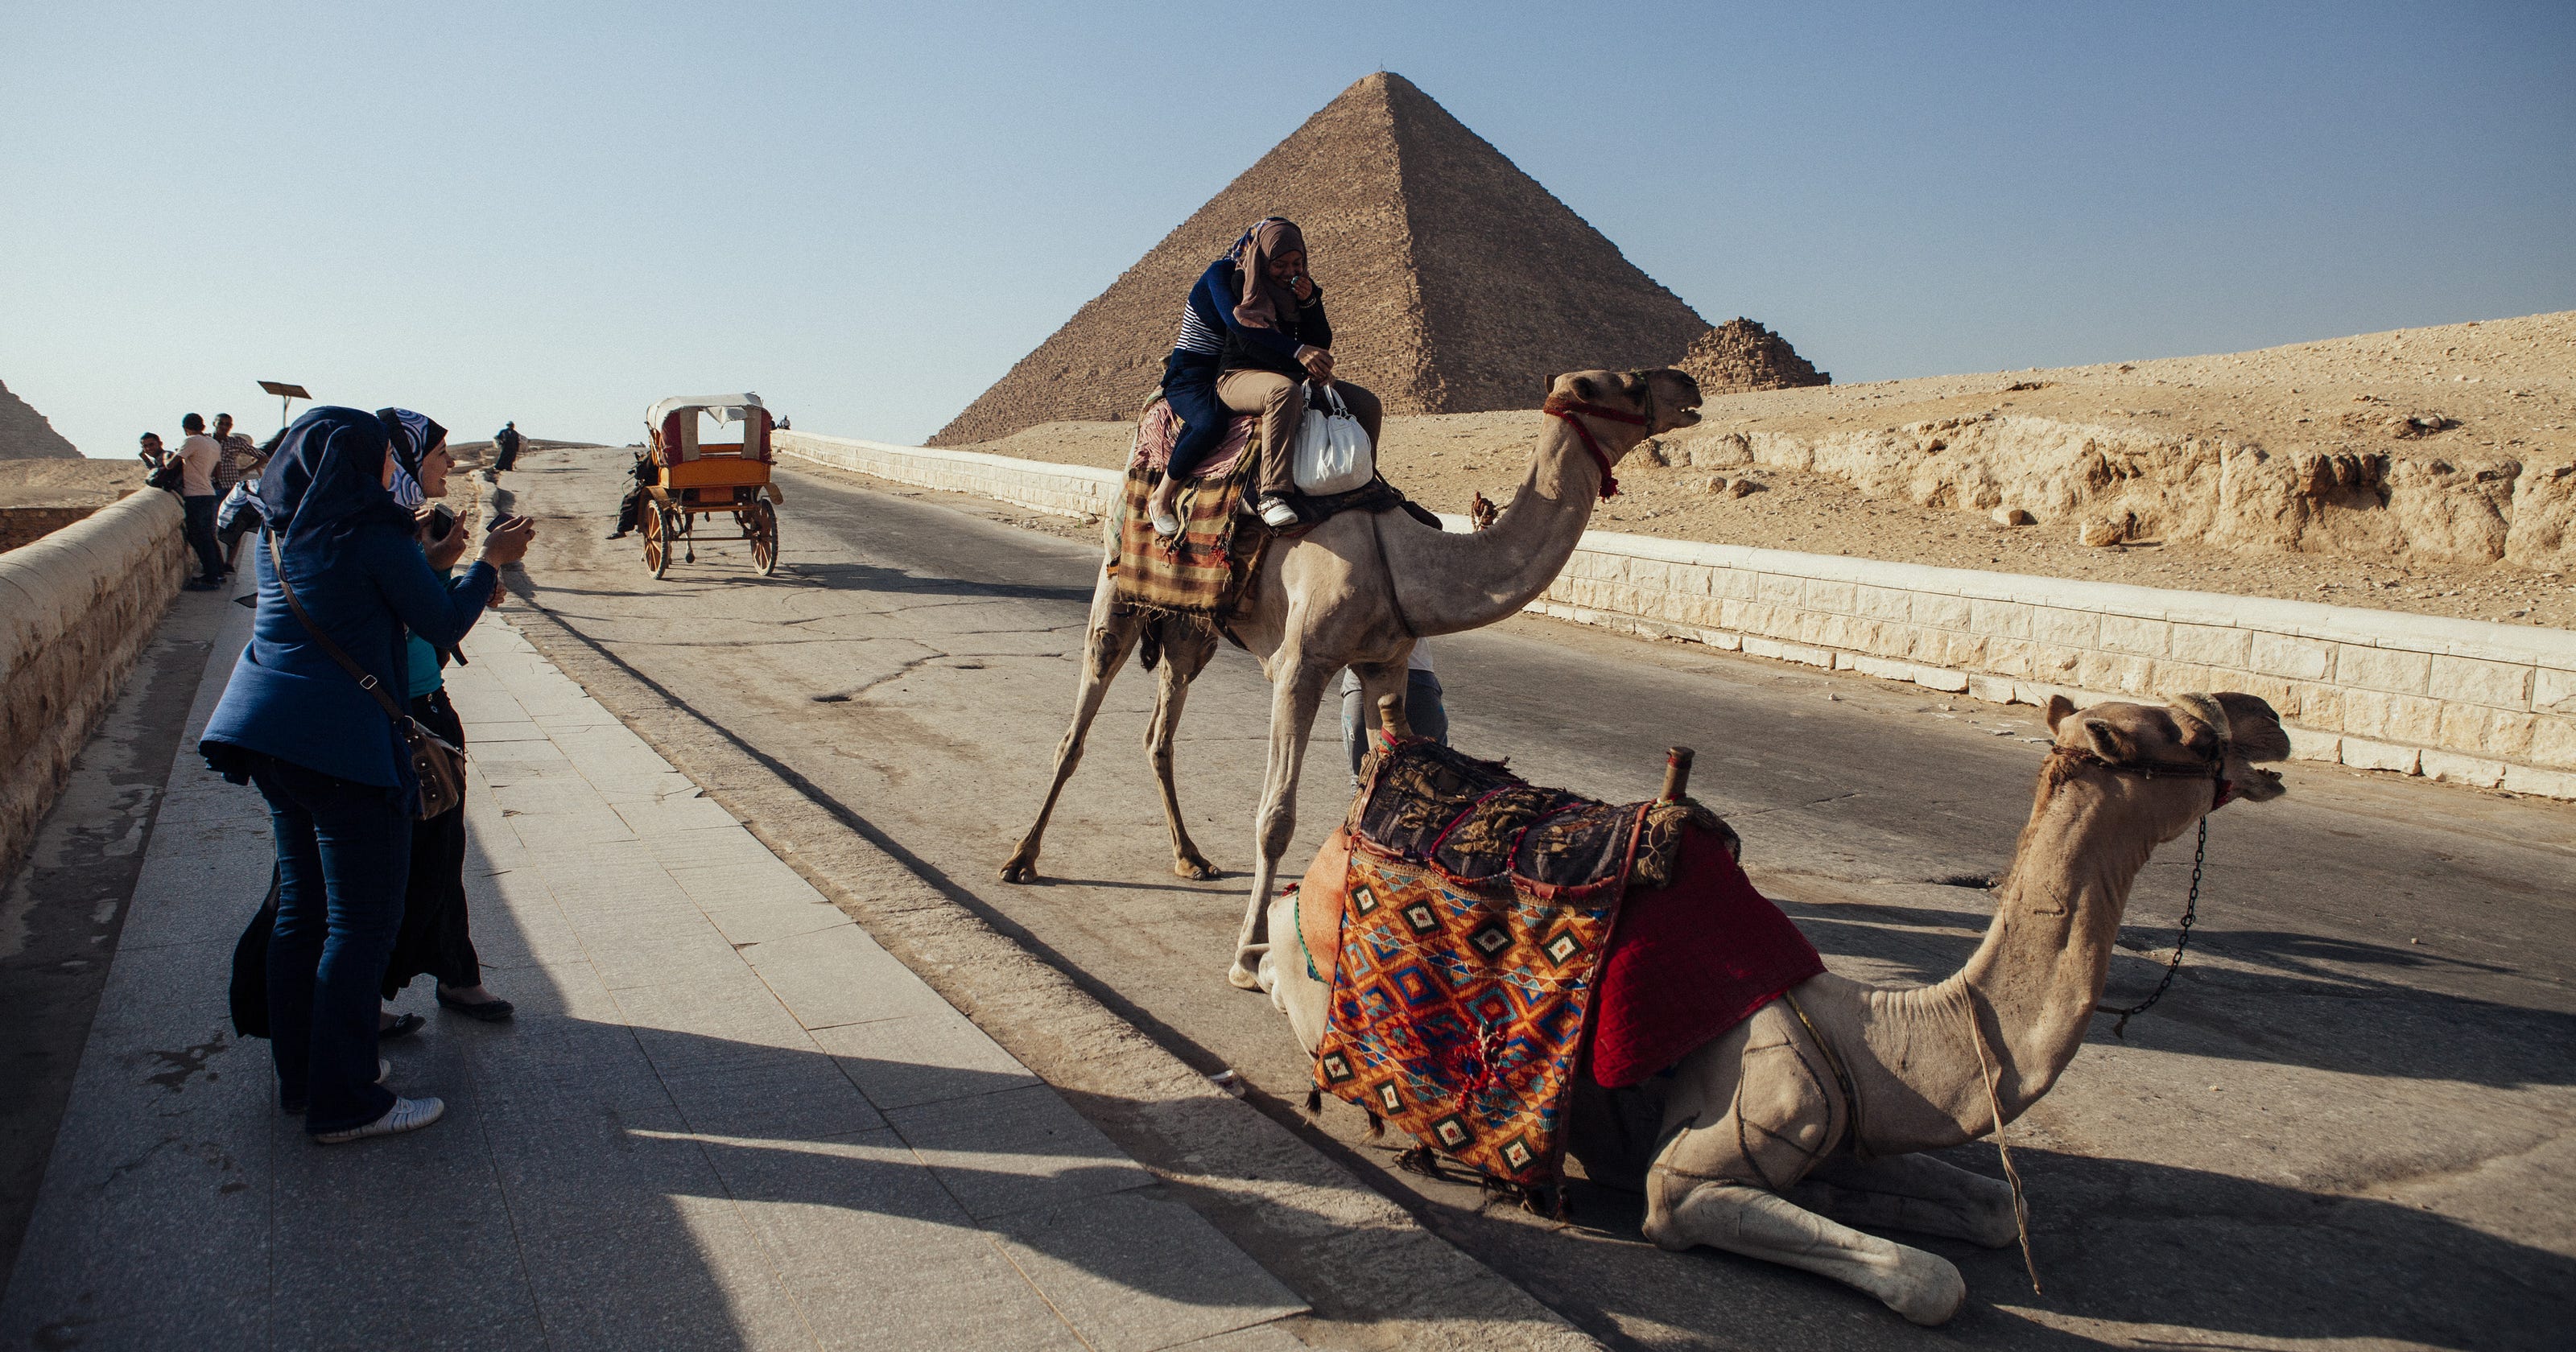 uk tour operators for egypt